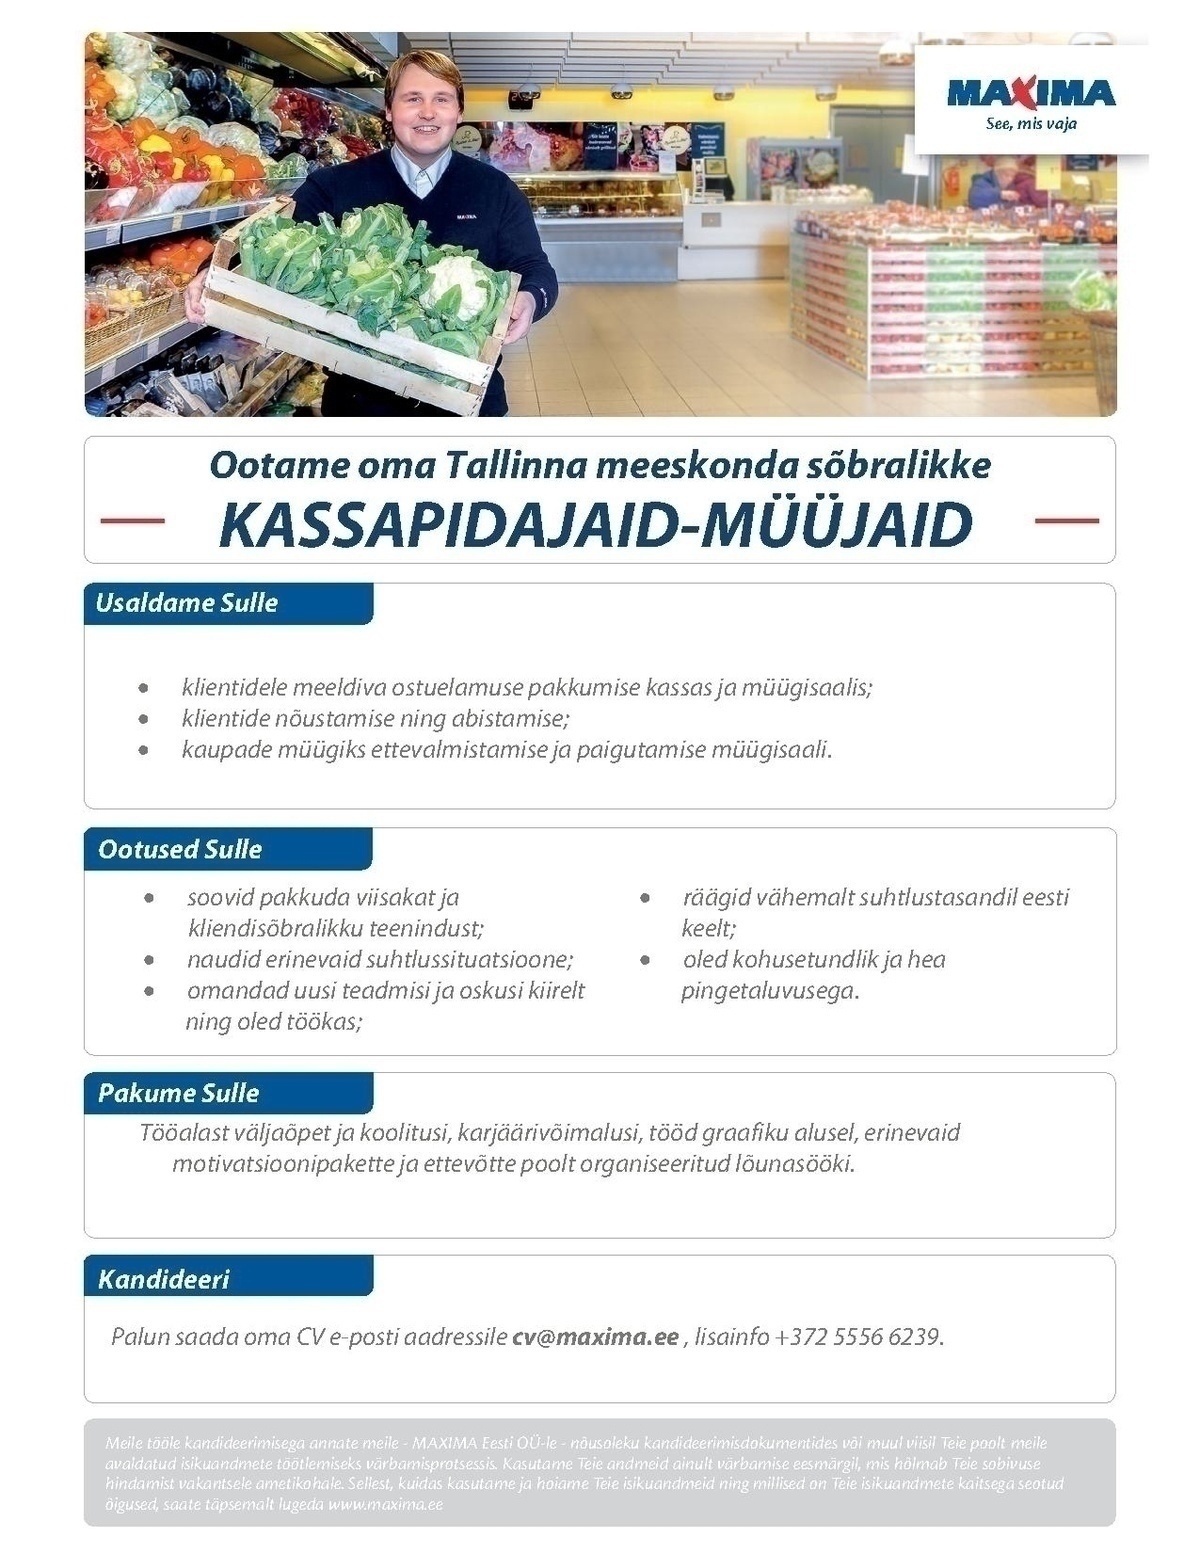 Maxima Eesti OÜ Kassapidaja-müüja Haabersti Maximasse XXX